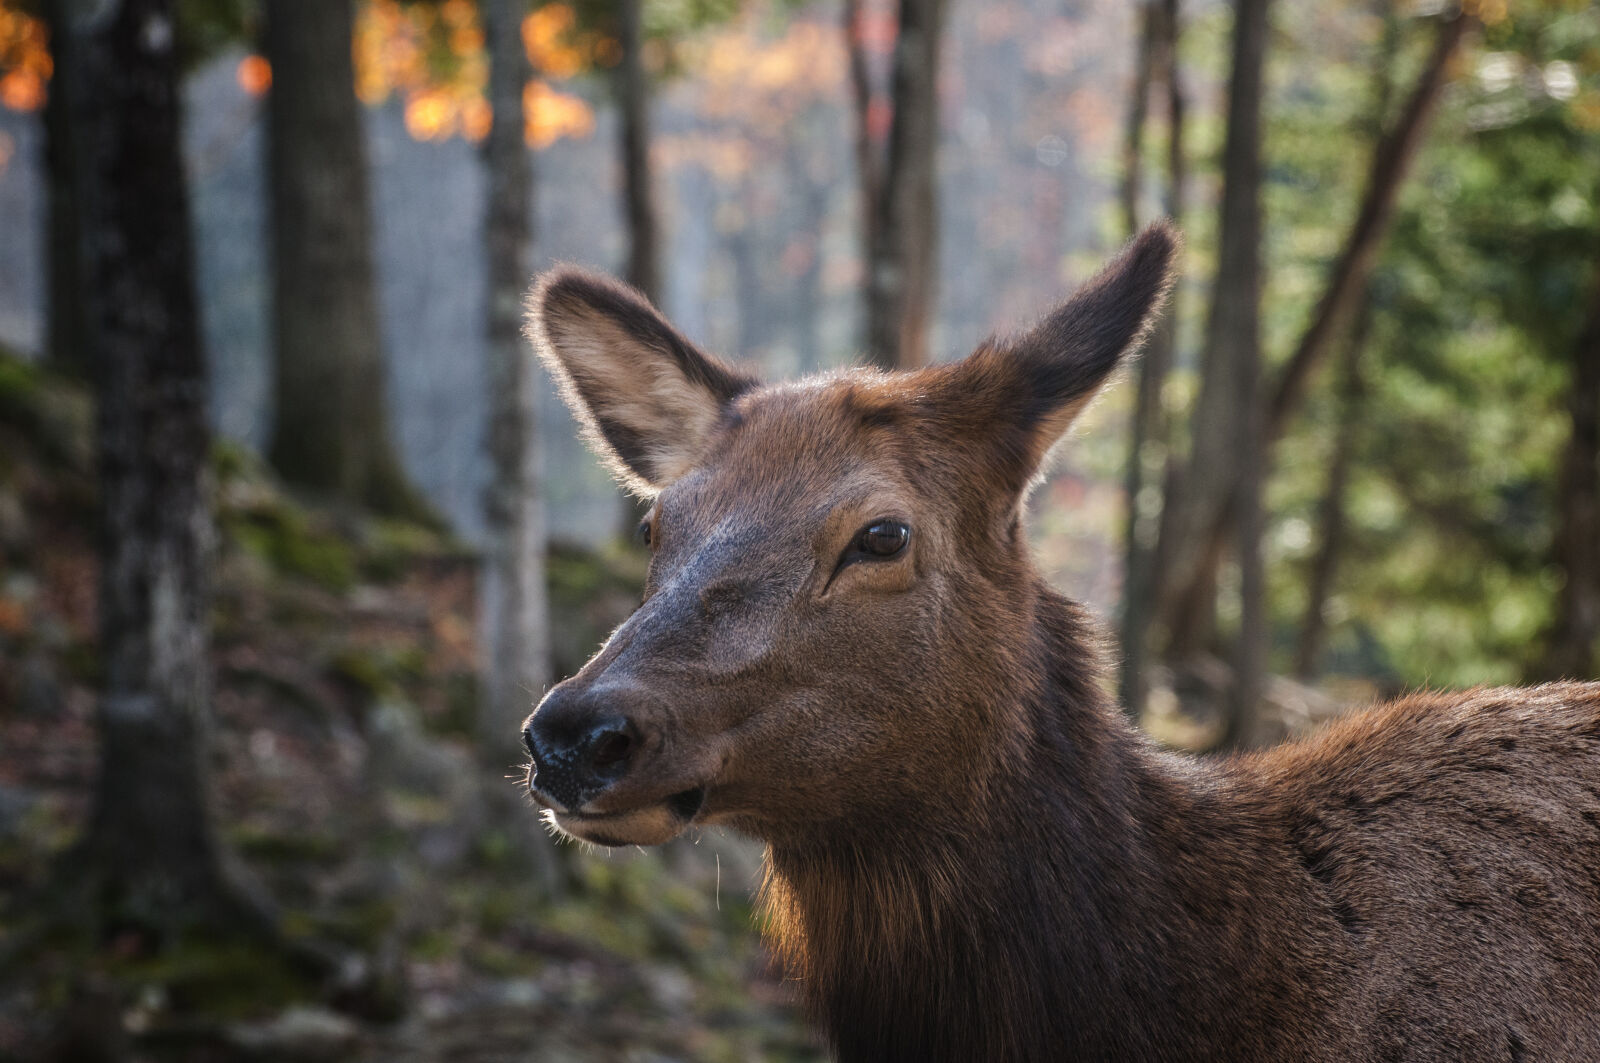 Nikon AF-S Nikkor 70-300mm F4.5-5.6G VR sample photo. Canada, deer, fall, fur photography